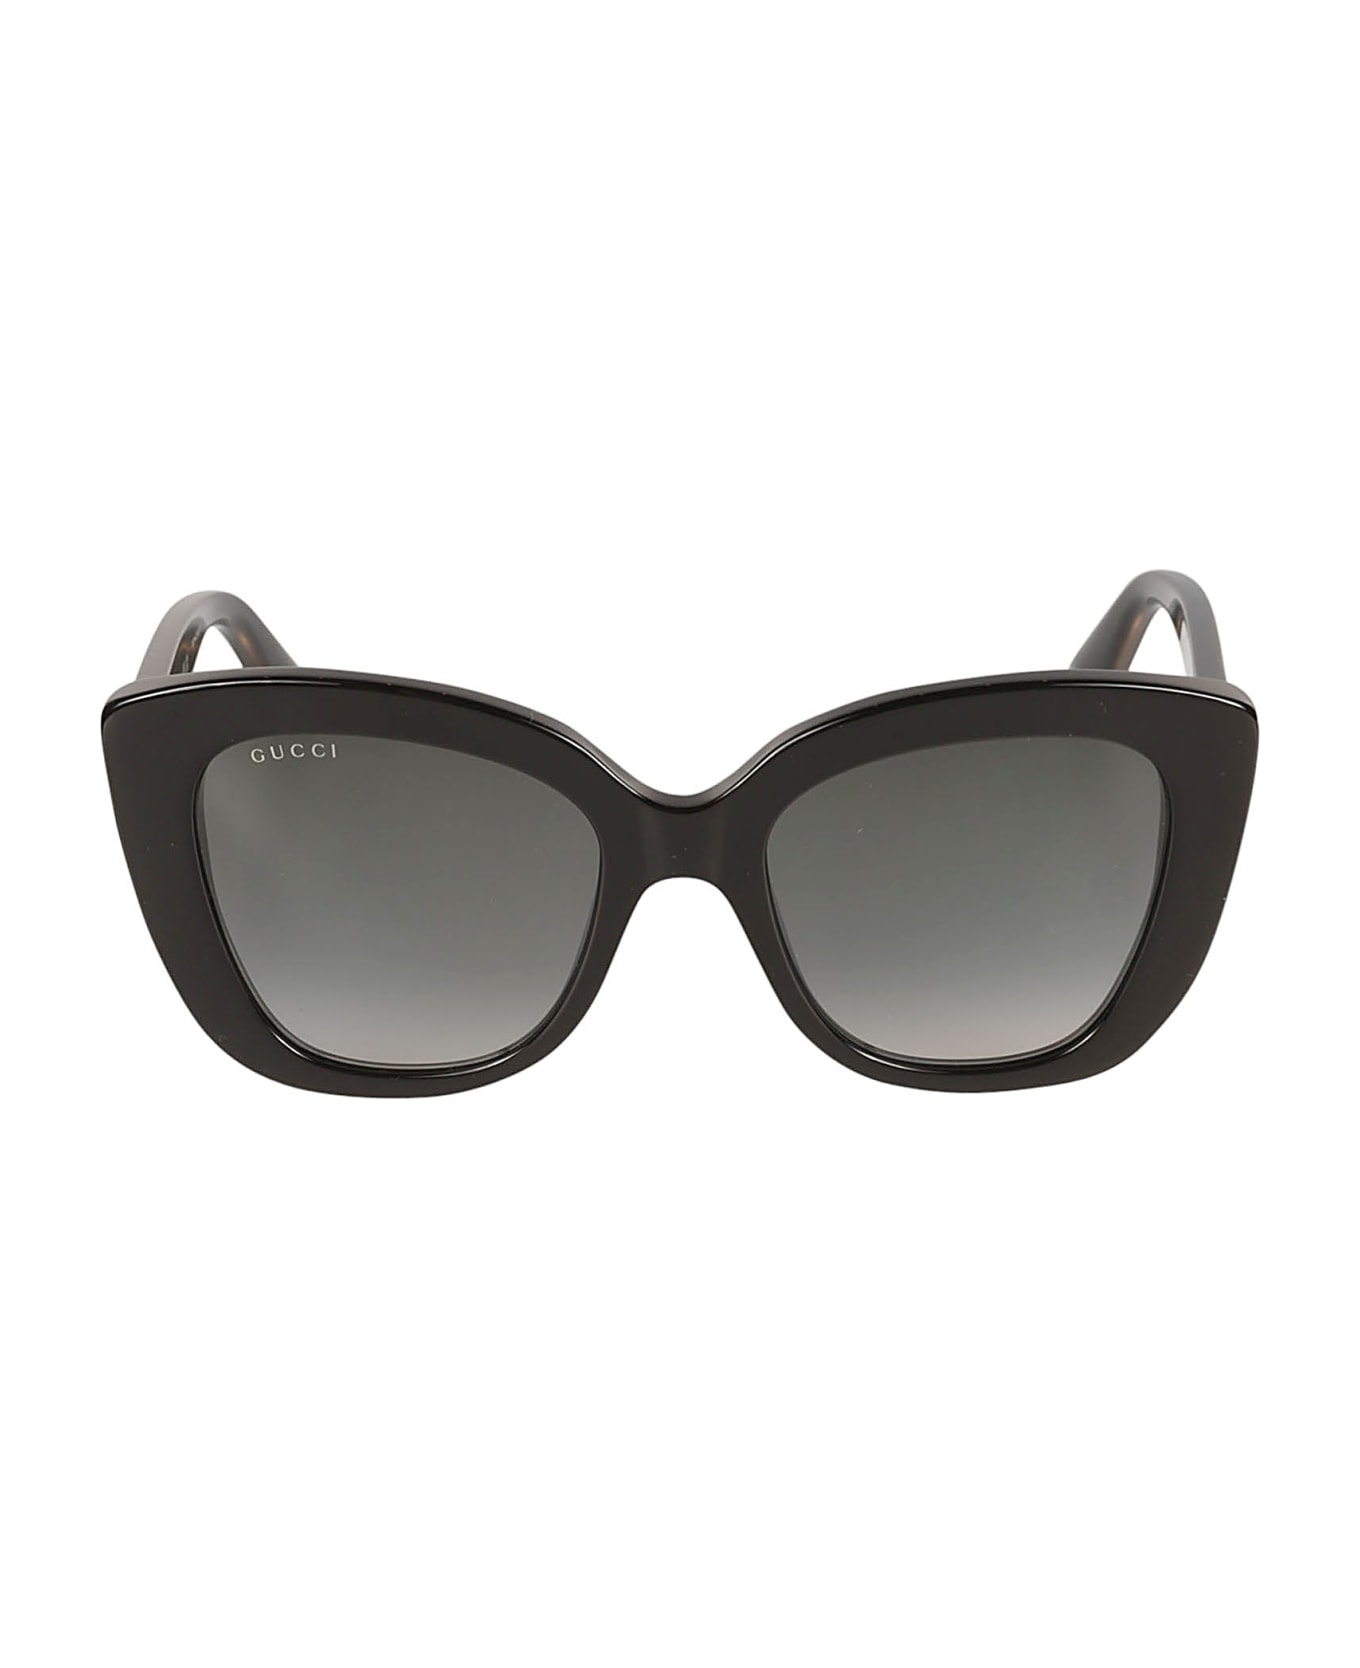 Gucci Eyewear Cat-eye Sunglasses - Black/Grey